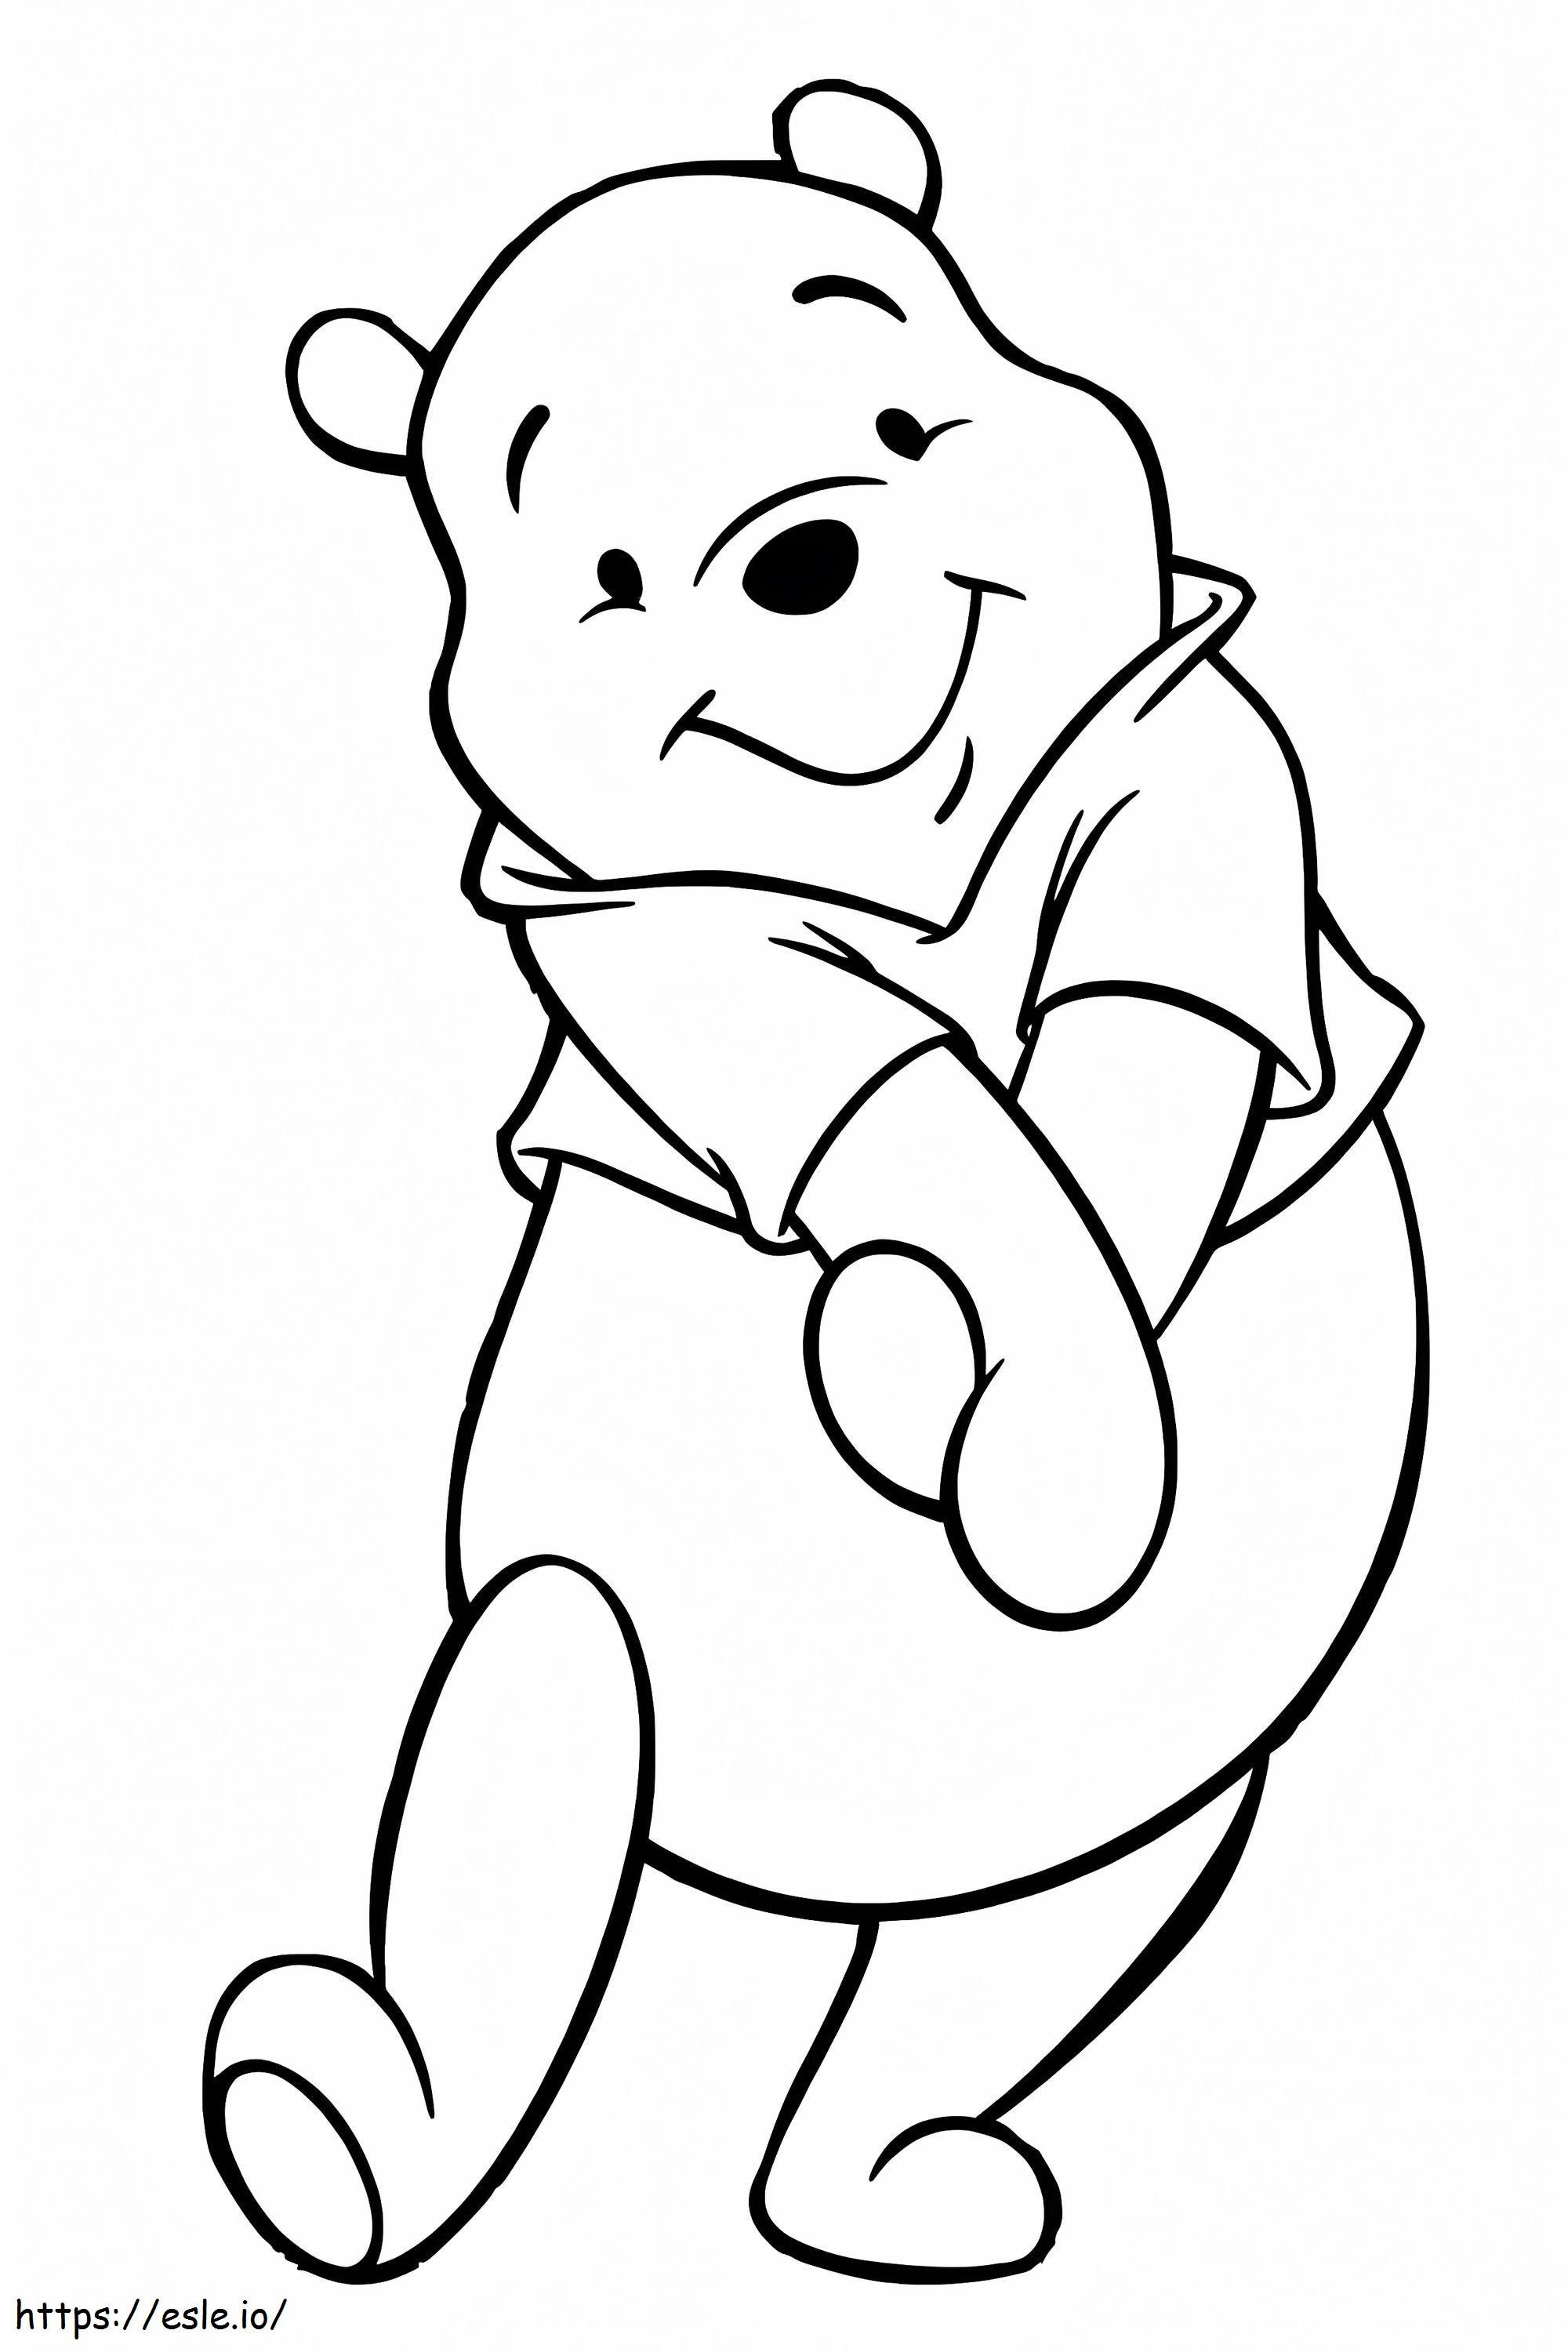 Ursinho Pooh sorrindo para colorir